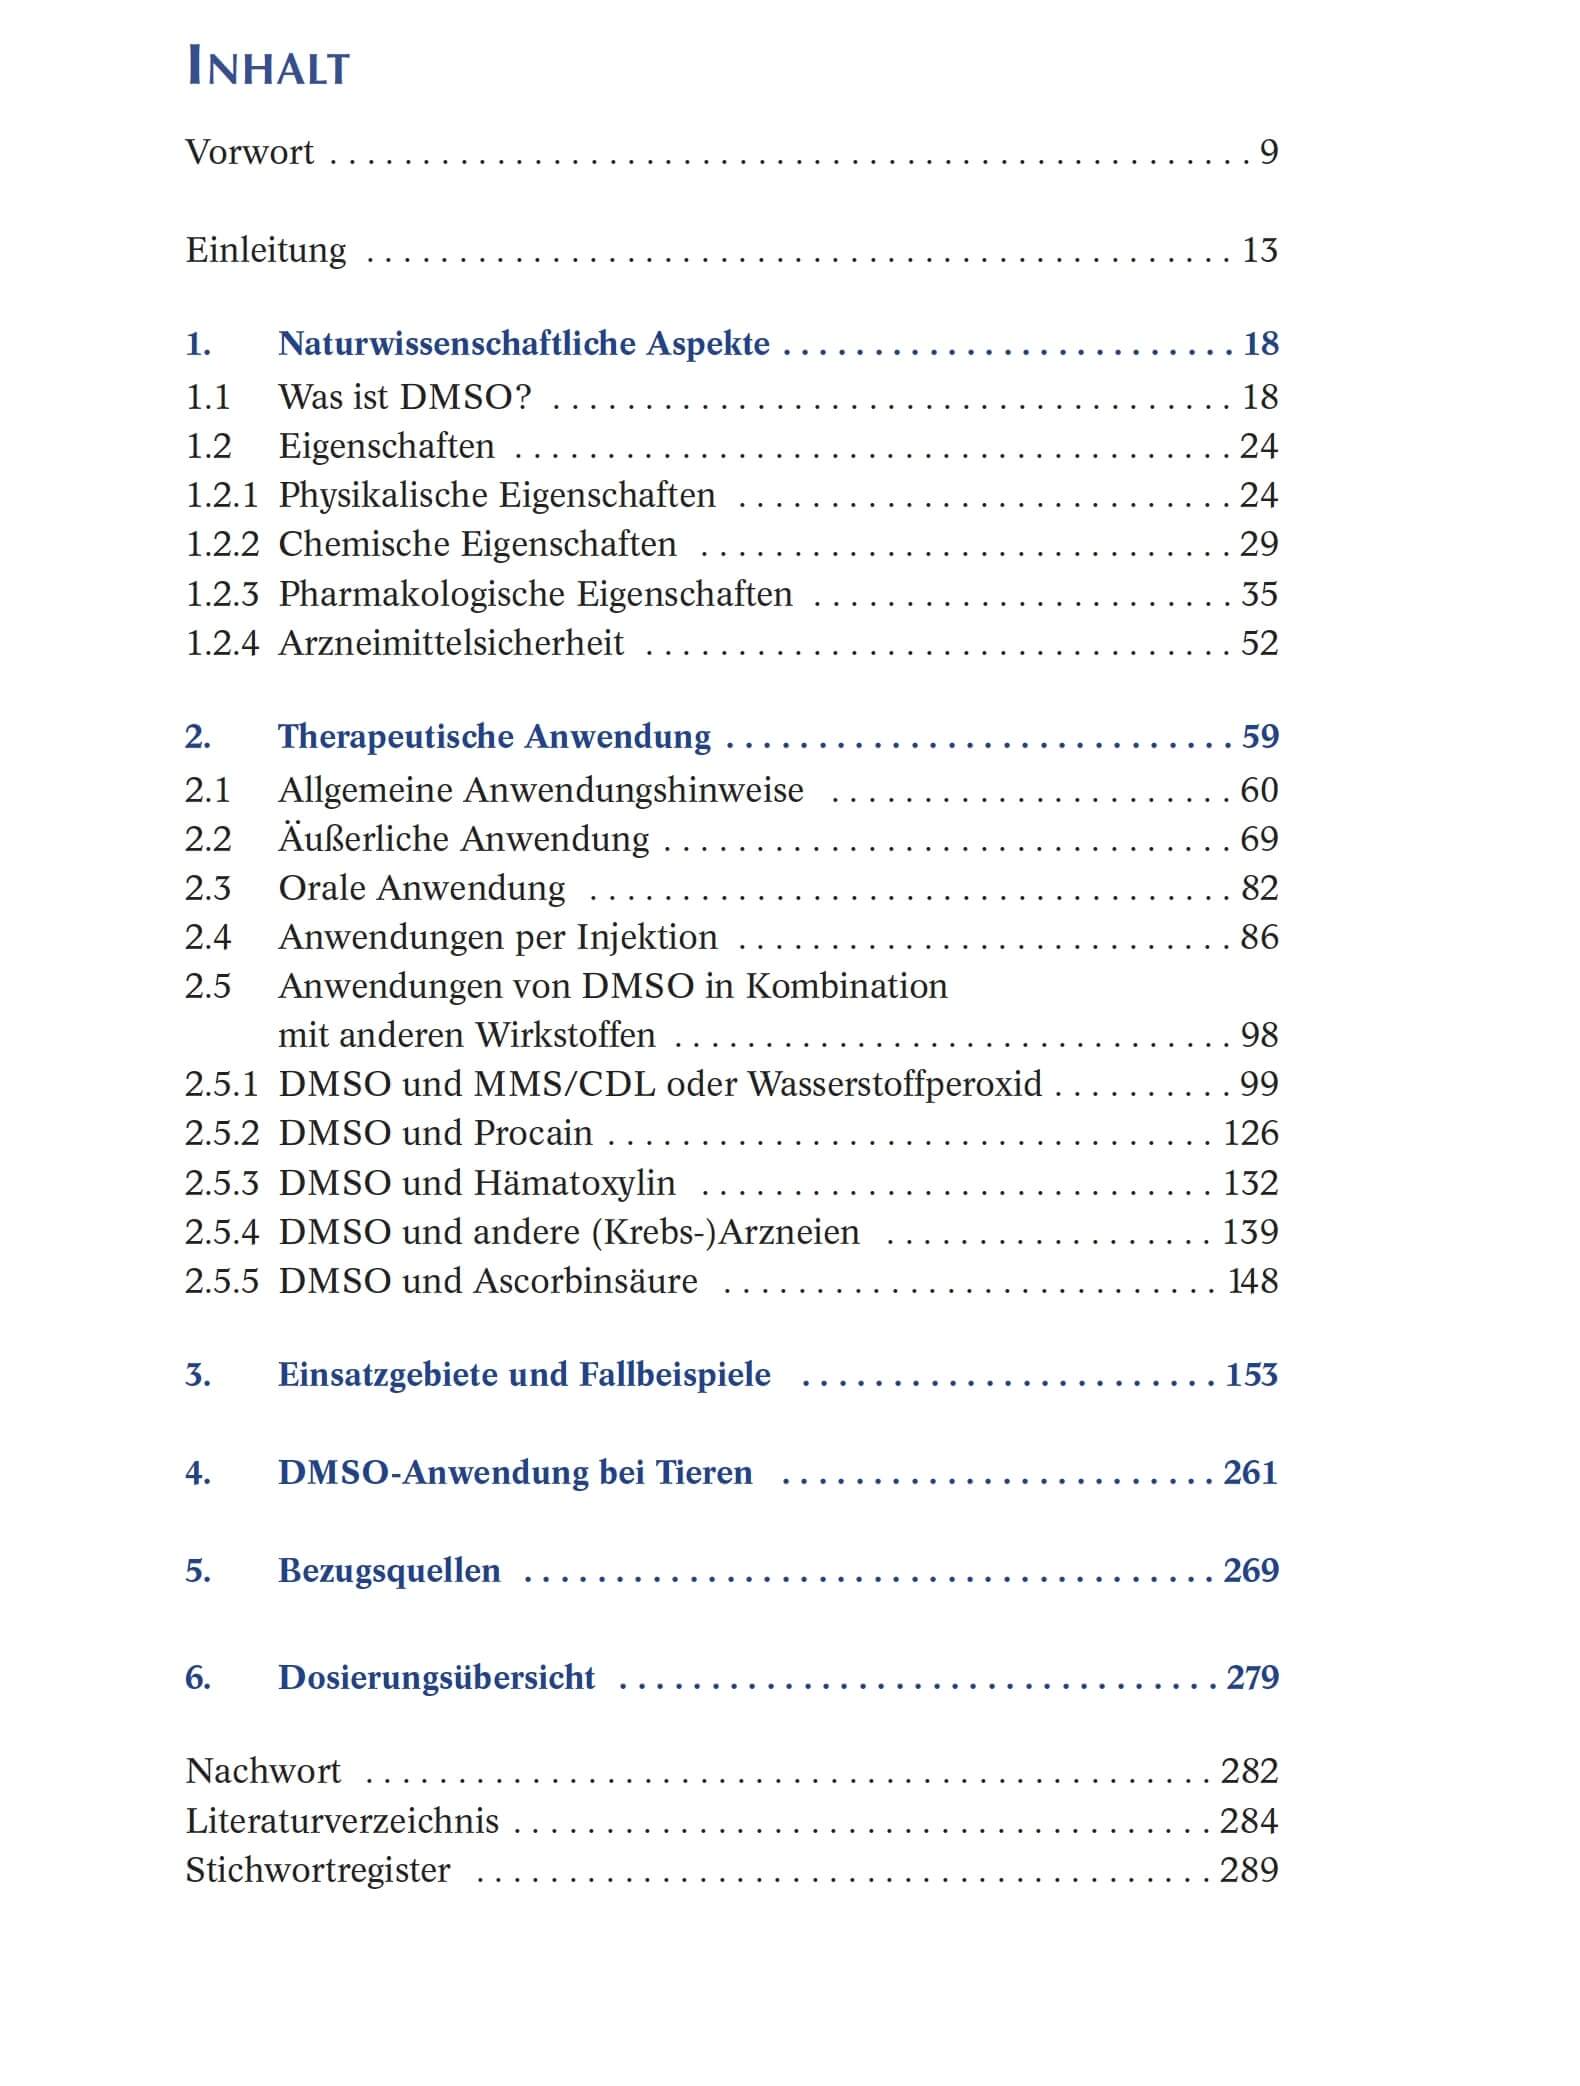 Das DMSO-Handbuch - Verborgenes Heilwissen (Über 22 Rezepte für DMSO zum Nachmachen)